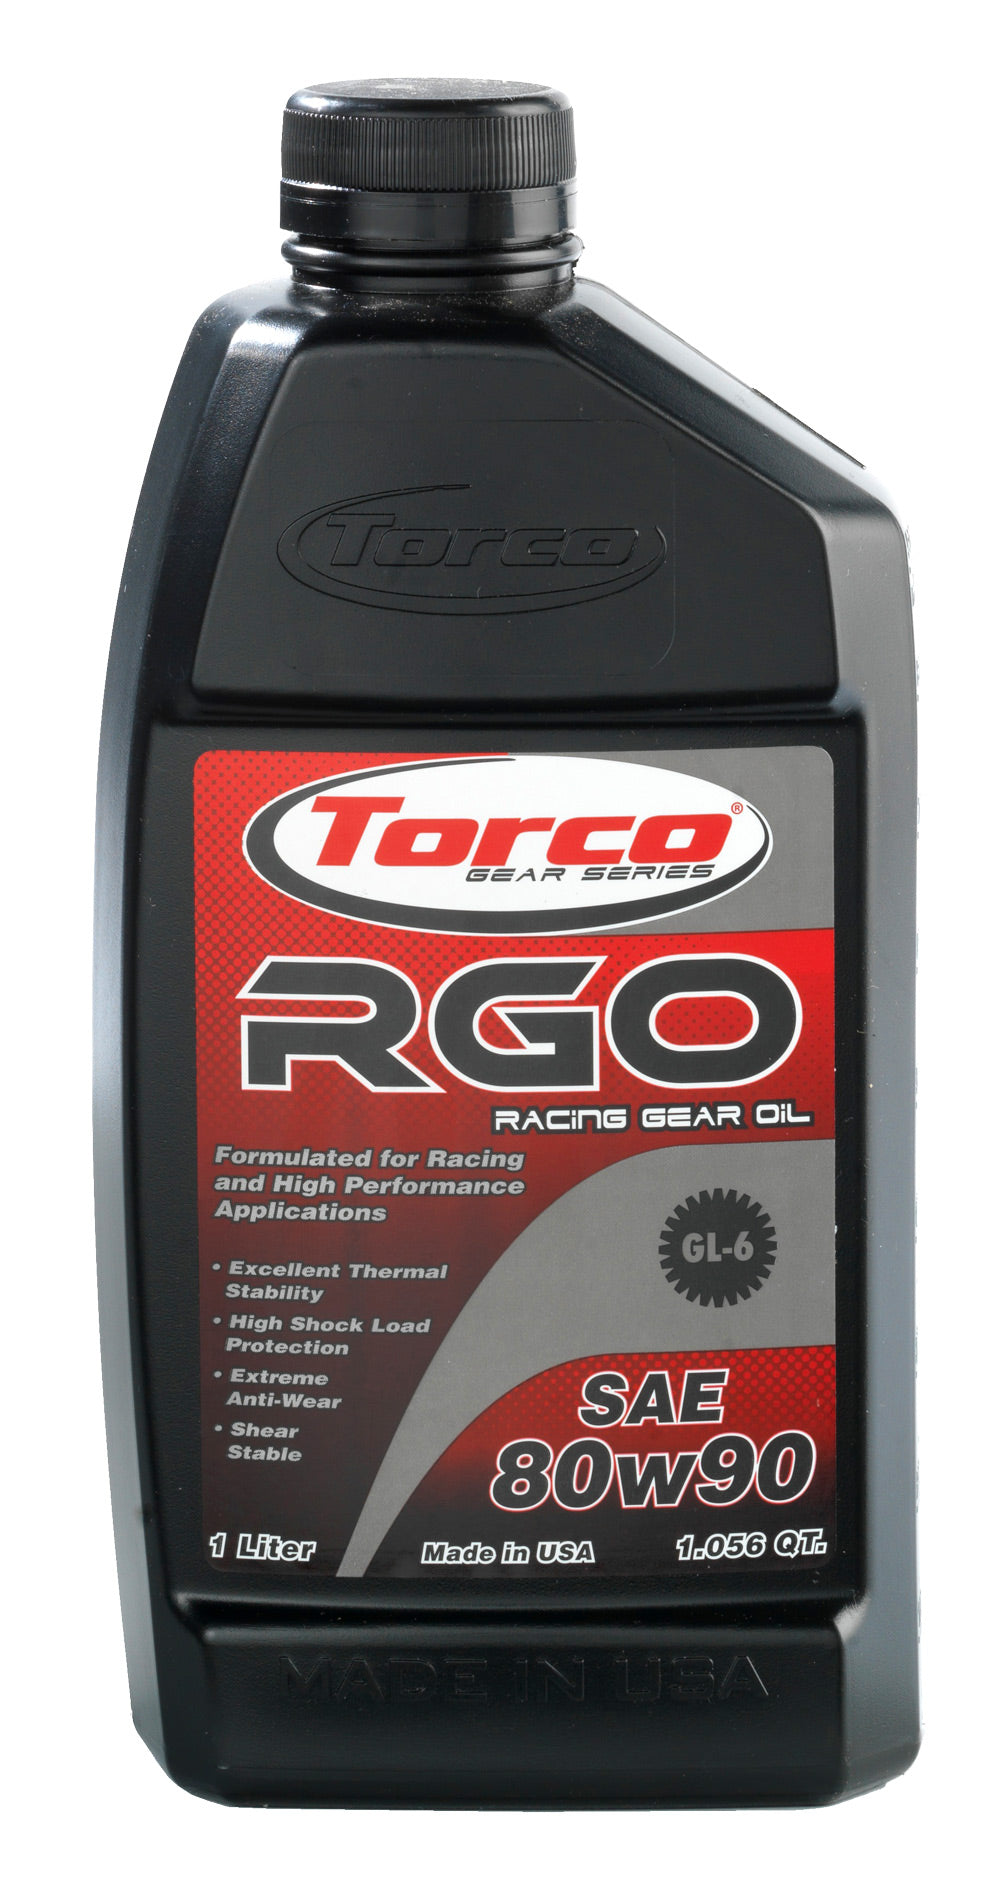 Torco RGO Racing Gear Oil